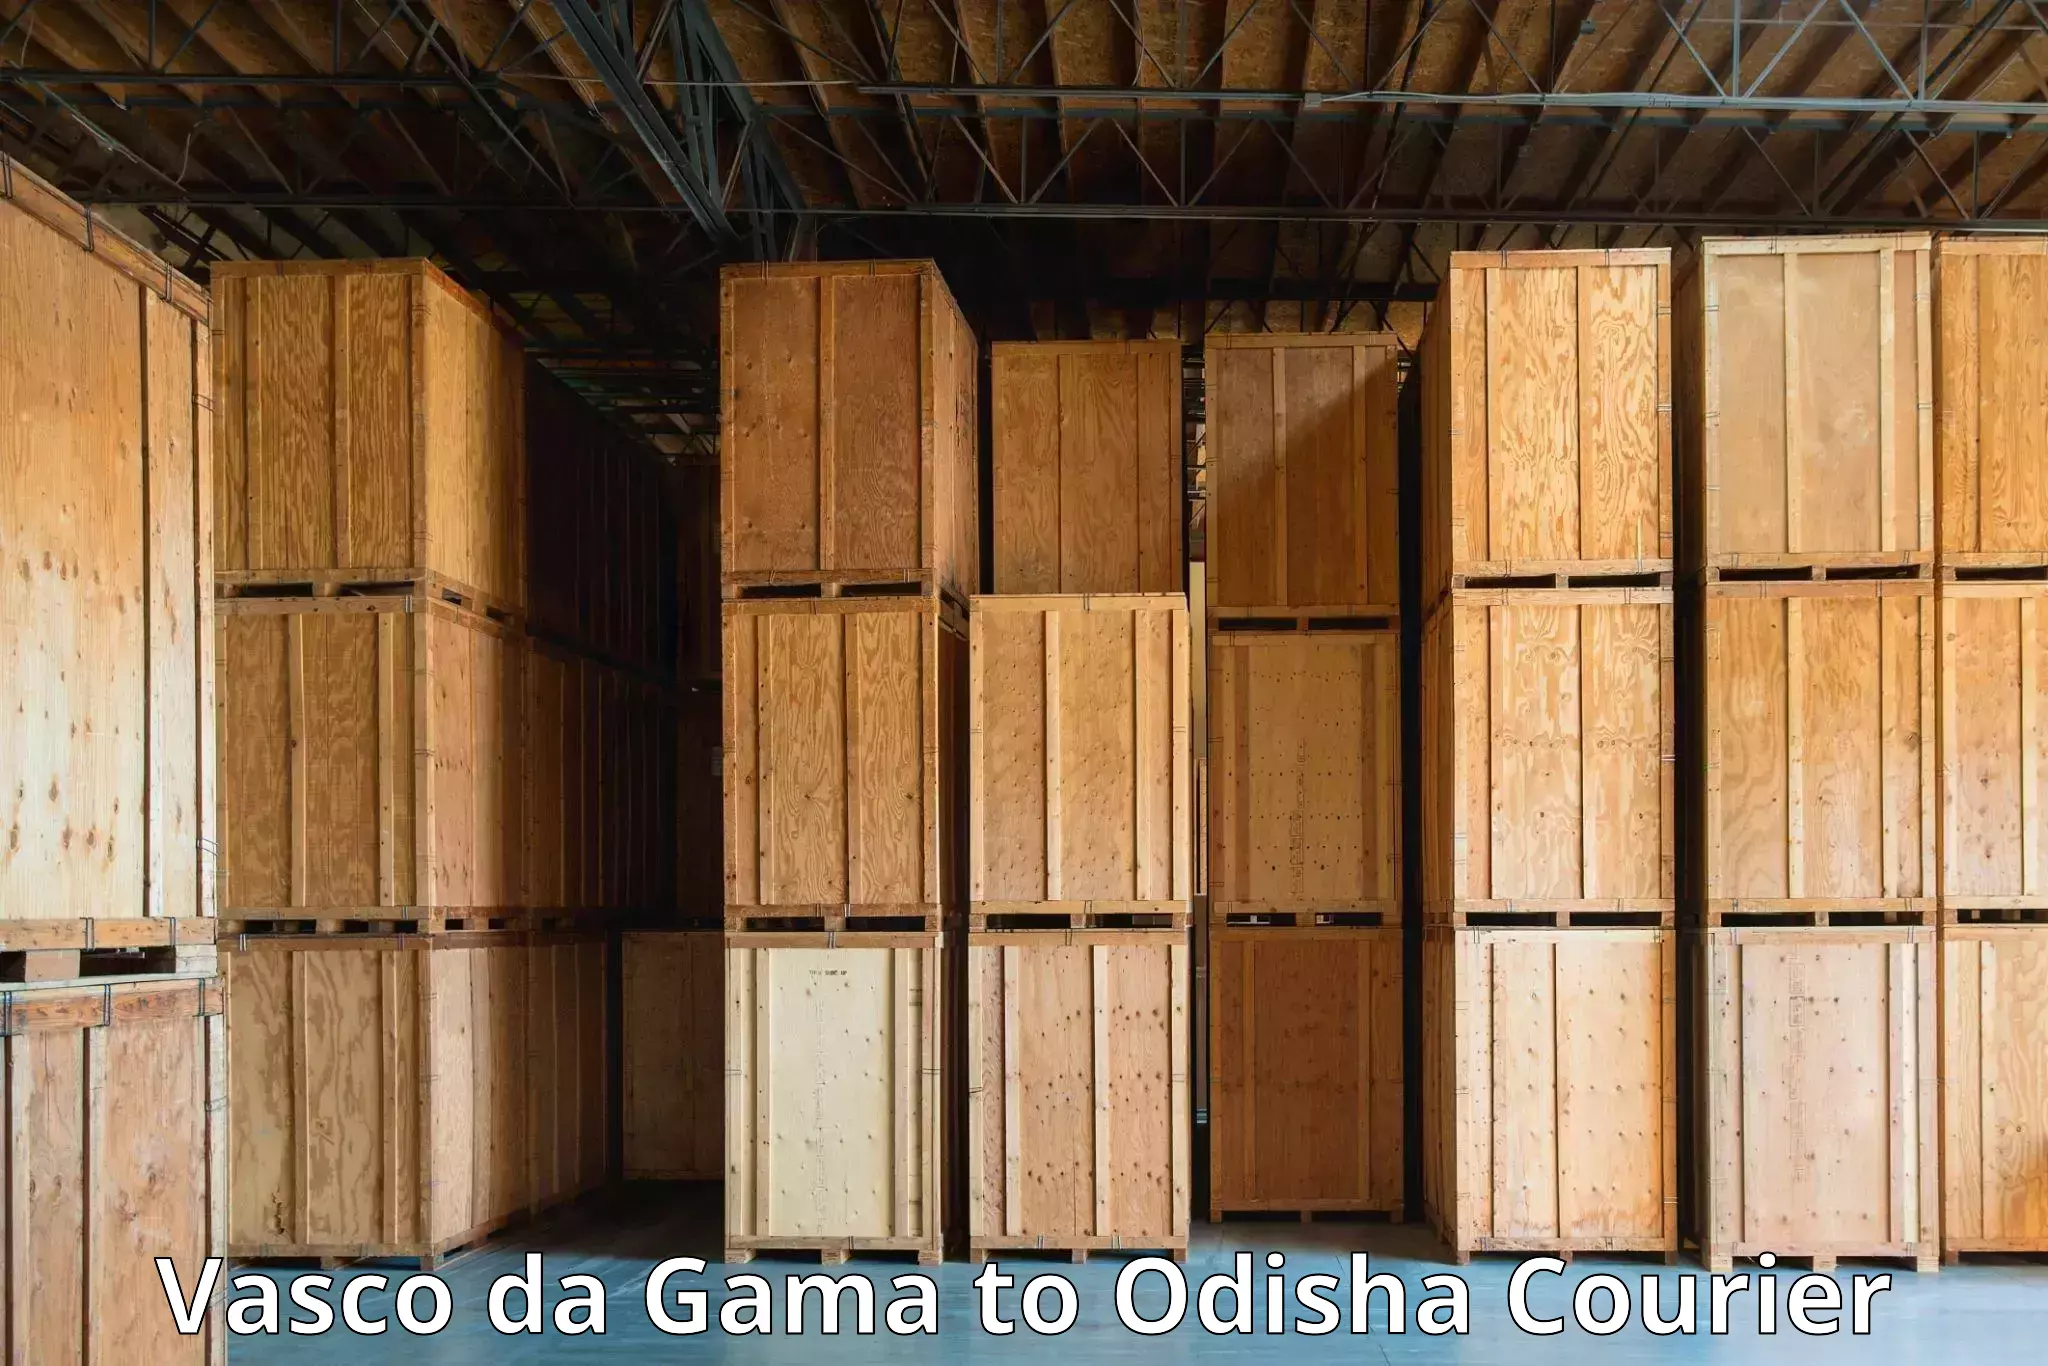 Professional courier services Vasco da Gama to Rairakhol